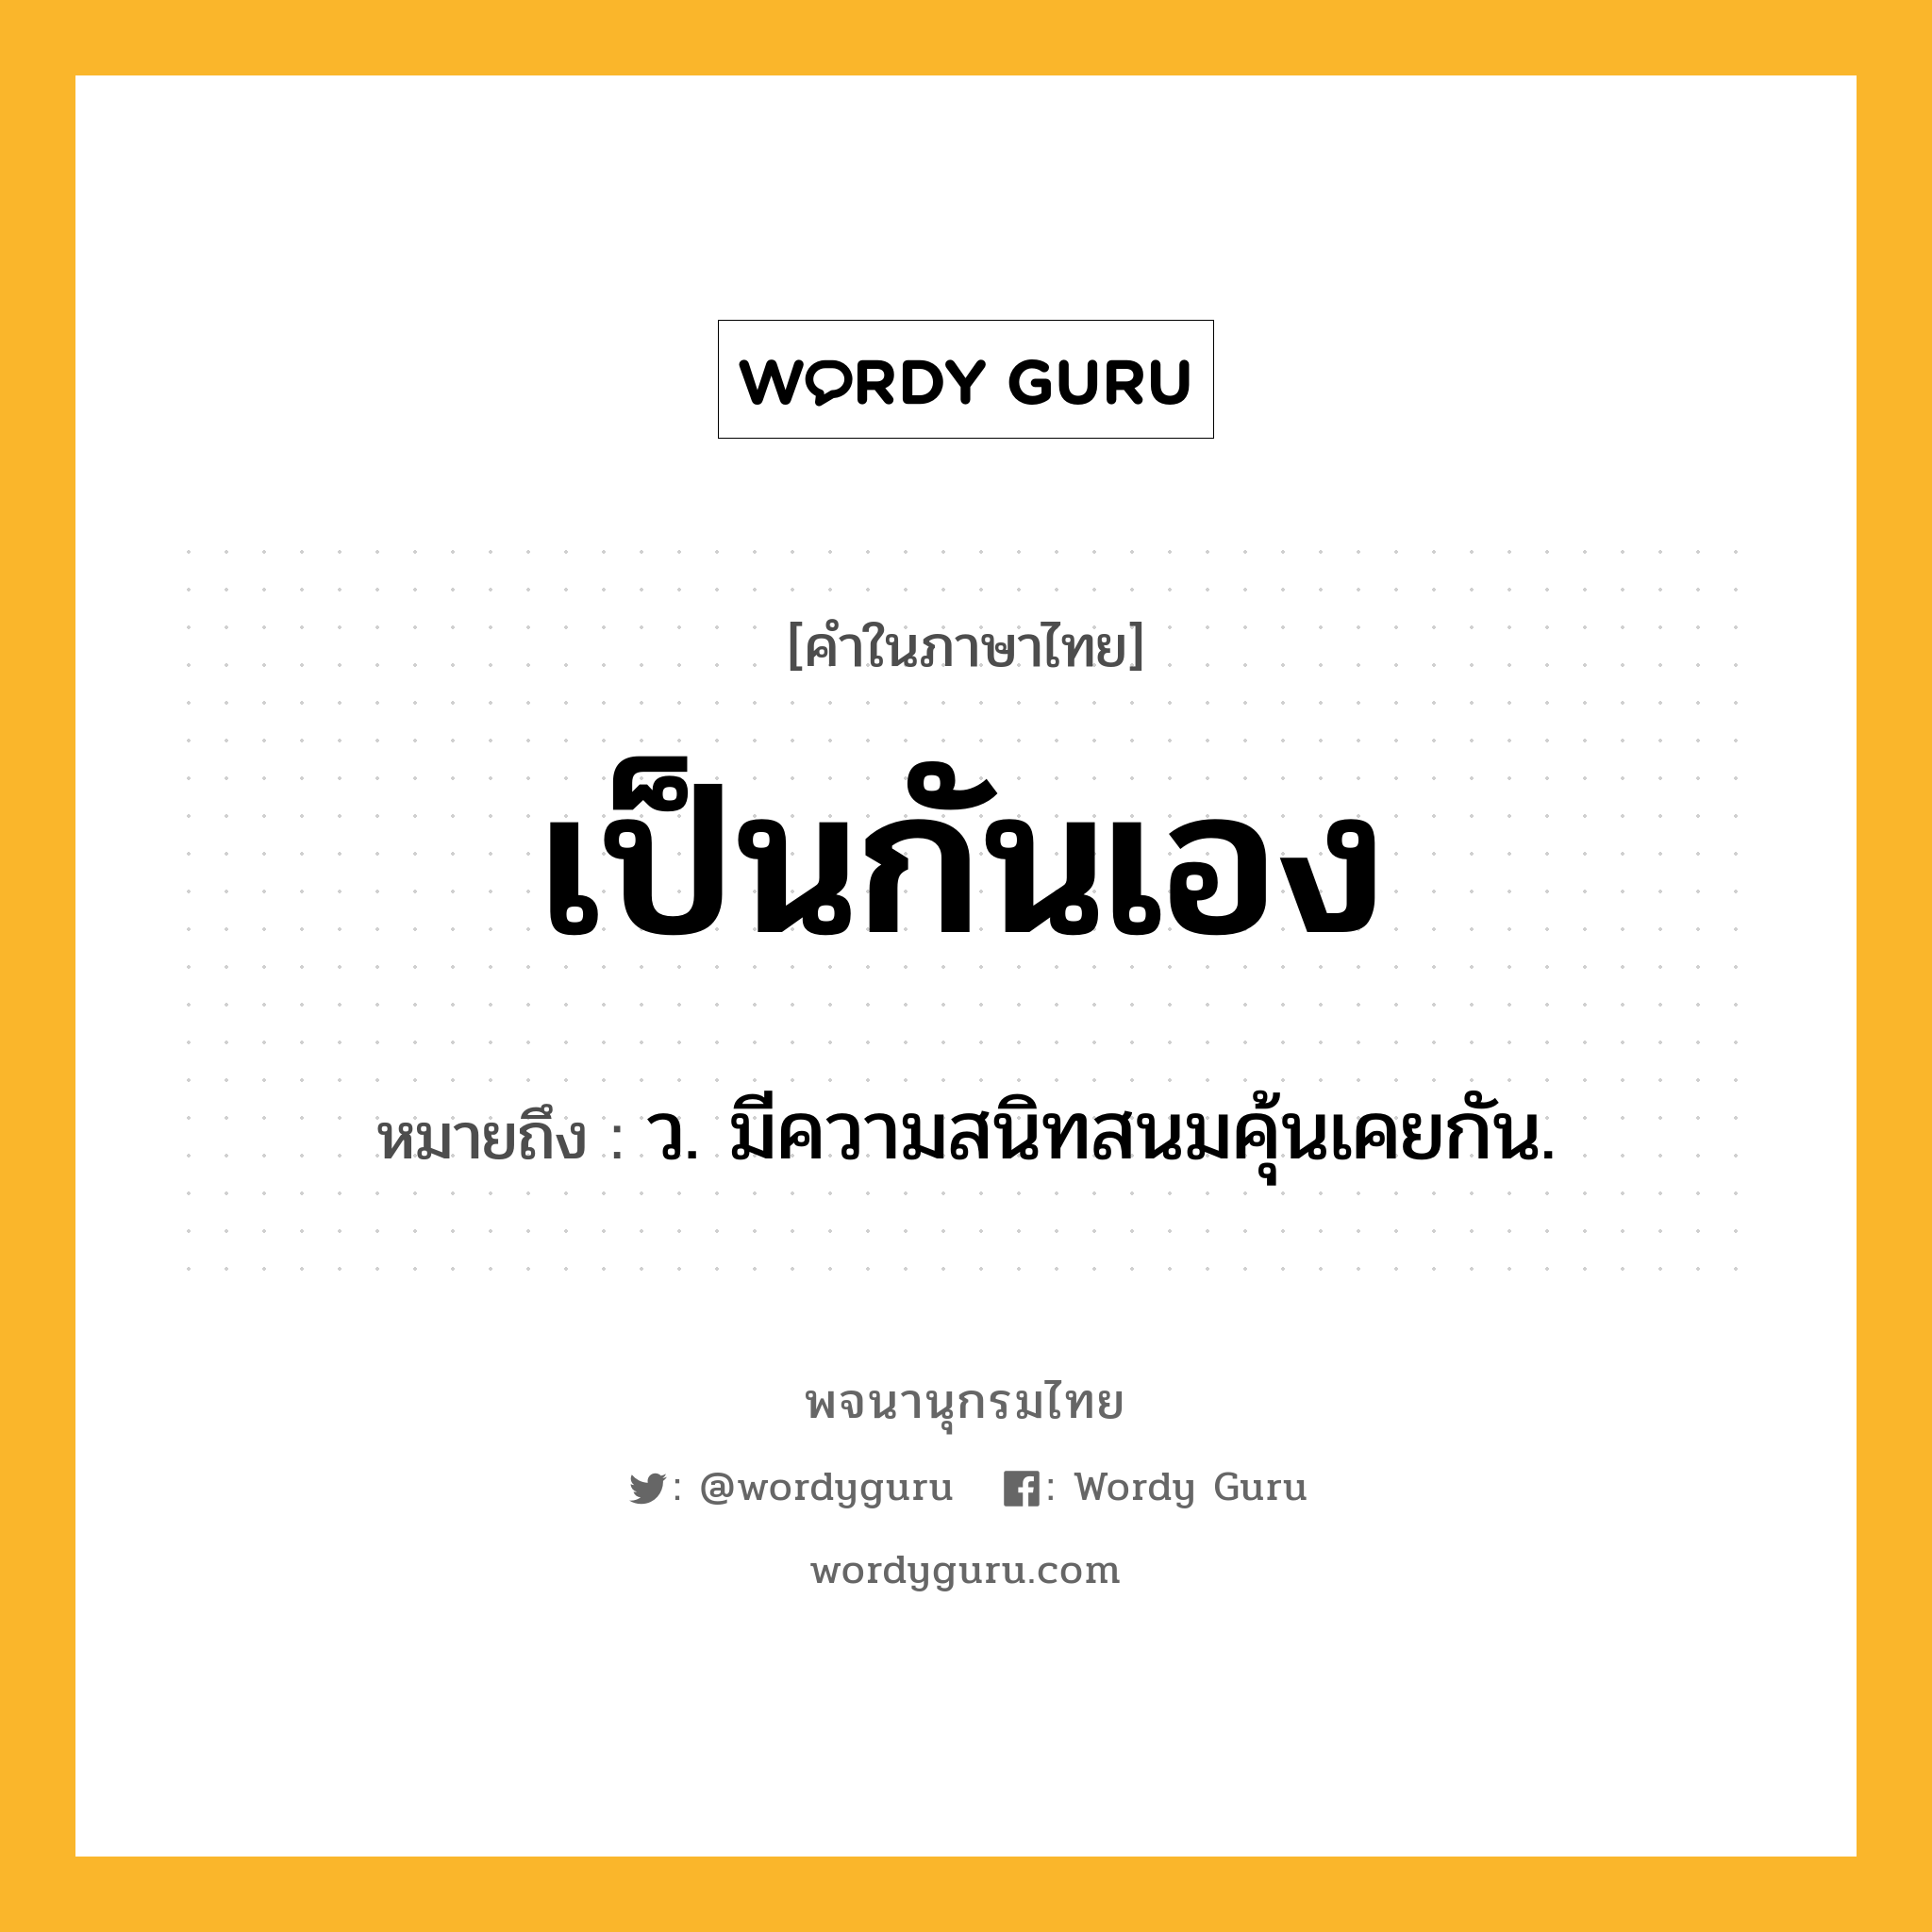 เป็นกันเอง ความหมาย หมายถึงอะไร?, คำในภาษาไทย เป็นกันเอง หมายถึง ว. มีความสนิทสนมคุ้นเคยกัน.